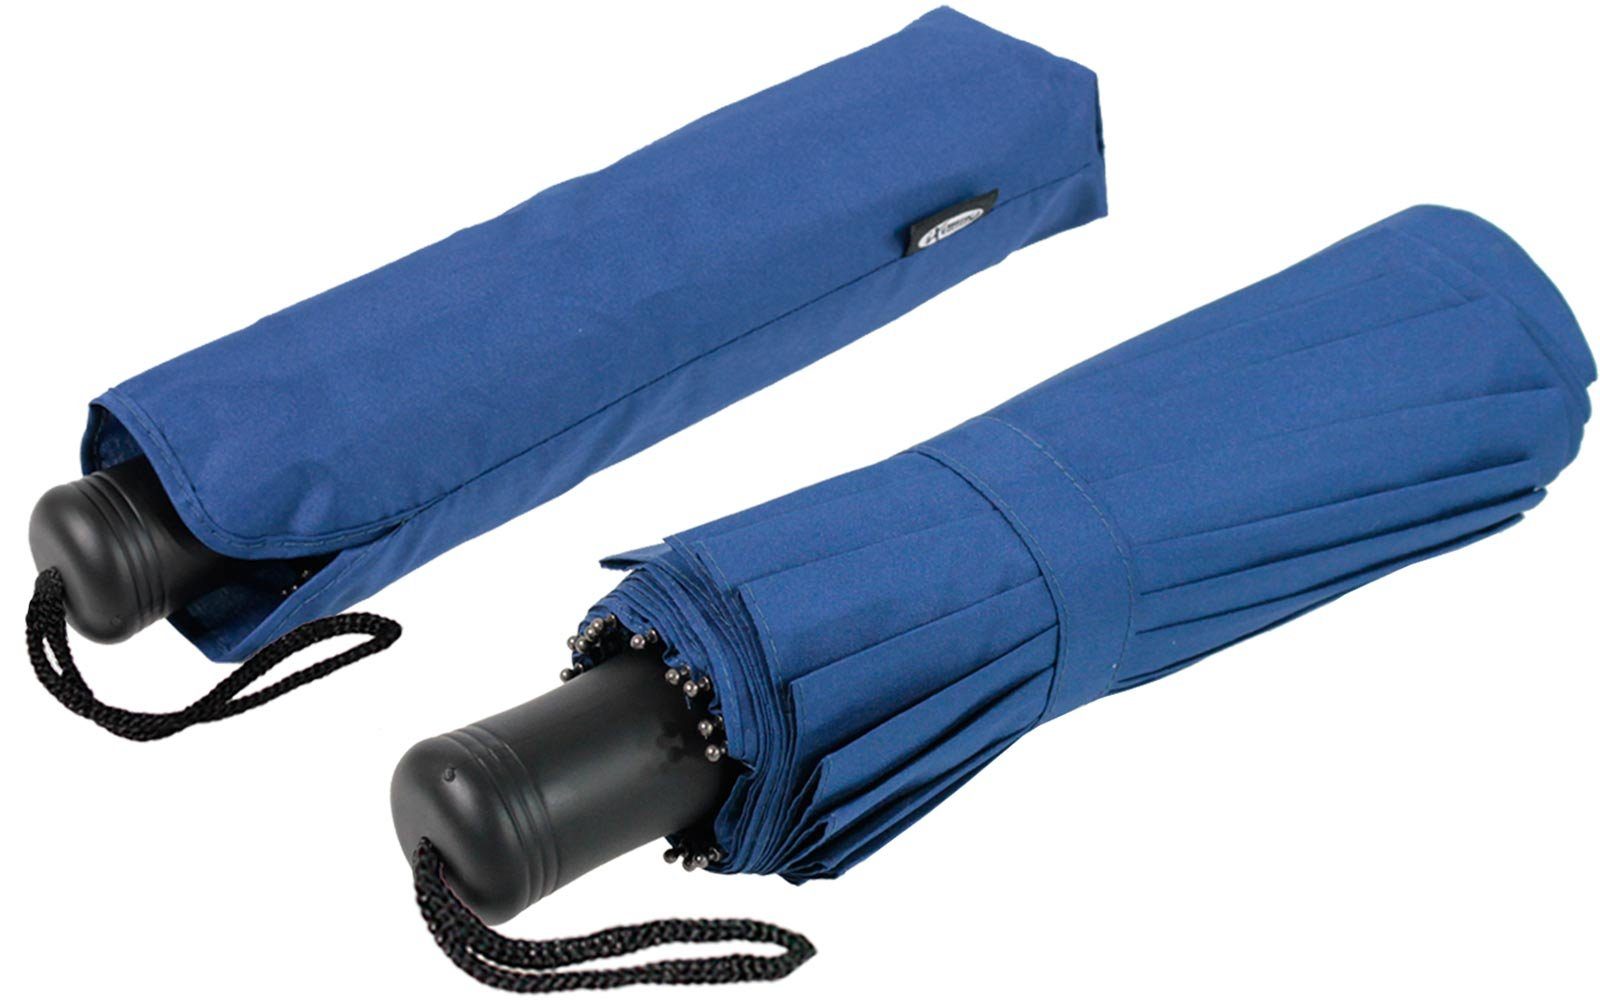 extravagant 16 extra Taschenregenschirm Streben blau mit iX-brella auffällig und stabil Mini und farbenfroh,